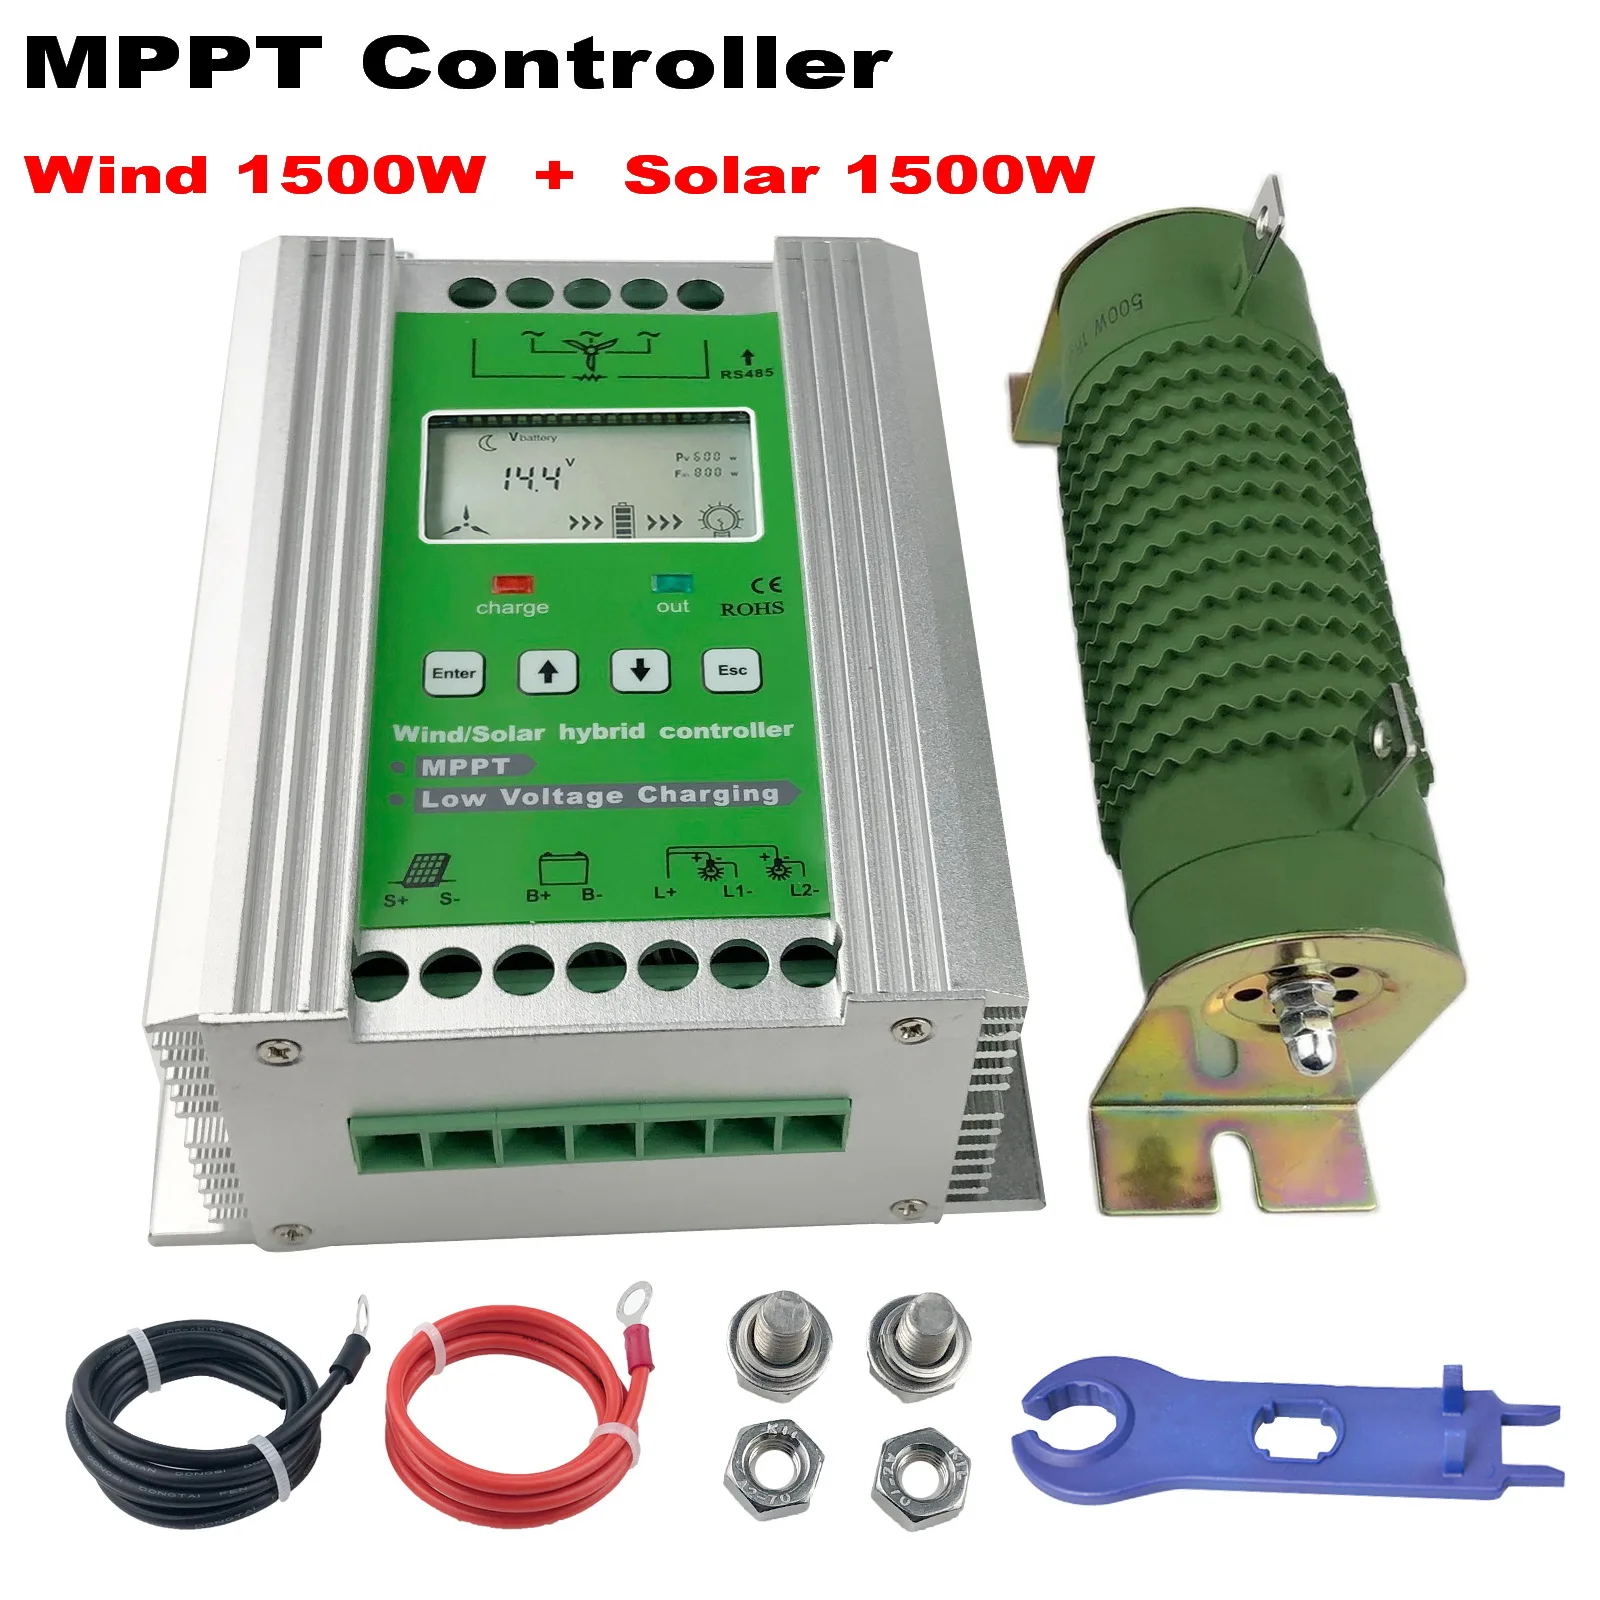 

3000W MPPT Hybrid Wind Solar Charge Controller Booster 12V 24V Regulator With Dump Load For Off System Wind Generator PV